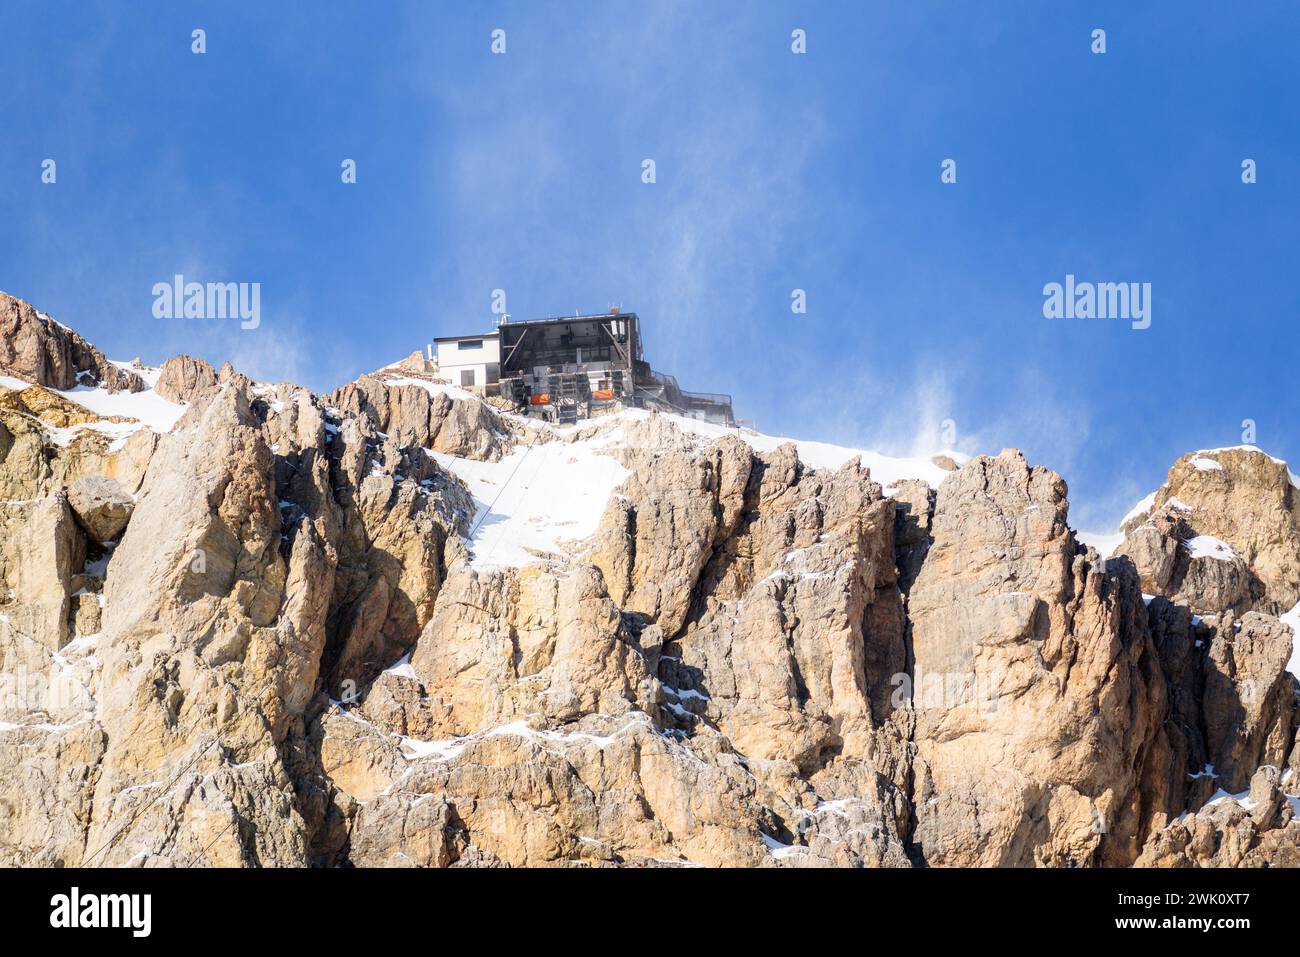 Stazione della funivia sulla cima di una montagna rocciosa innevata in una ventosa giornata invernale Foto Stock